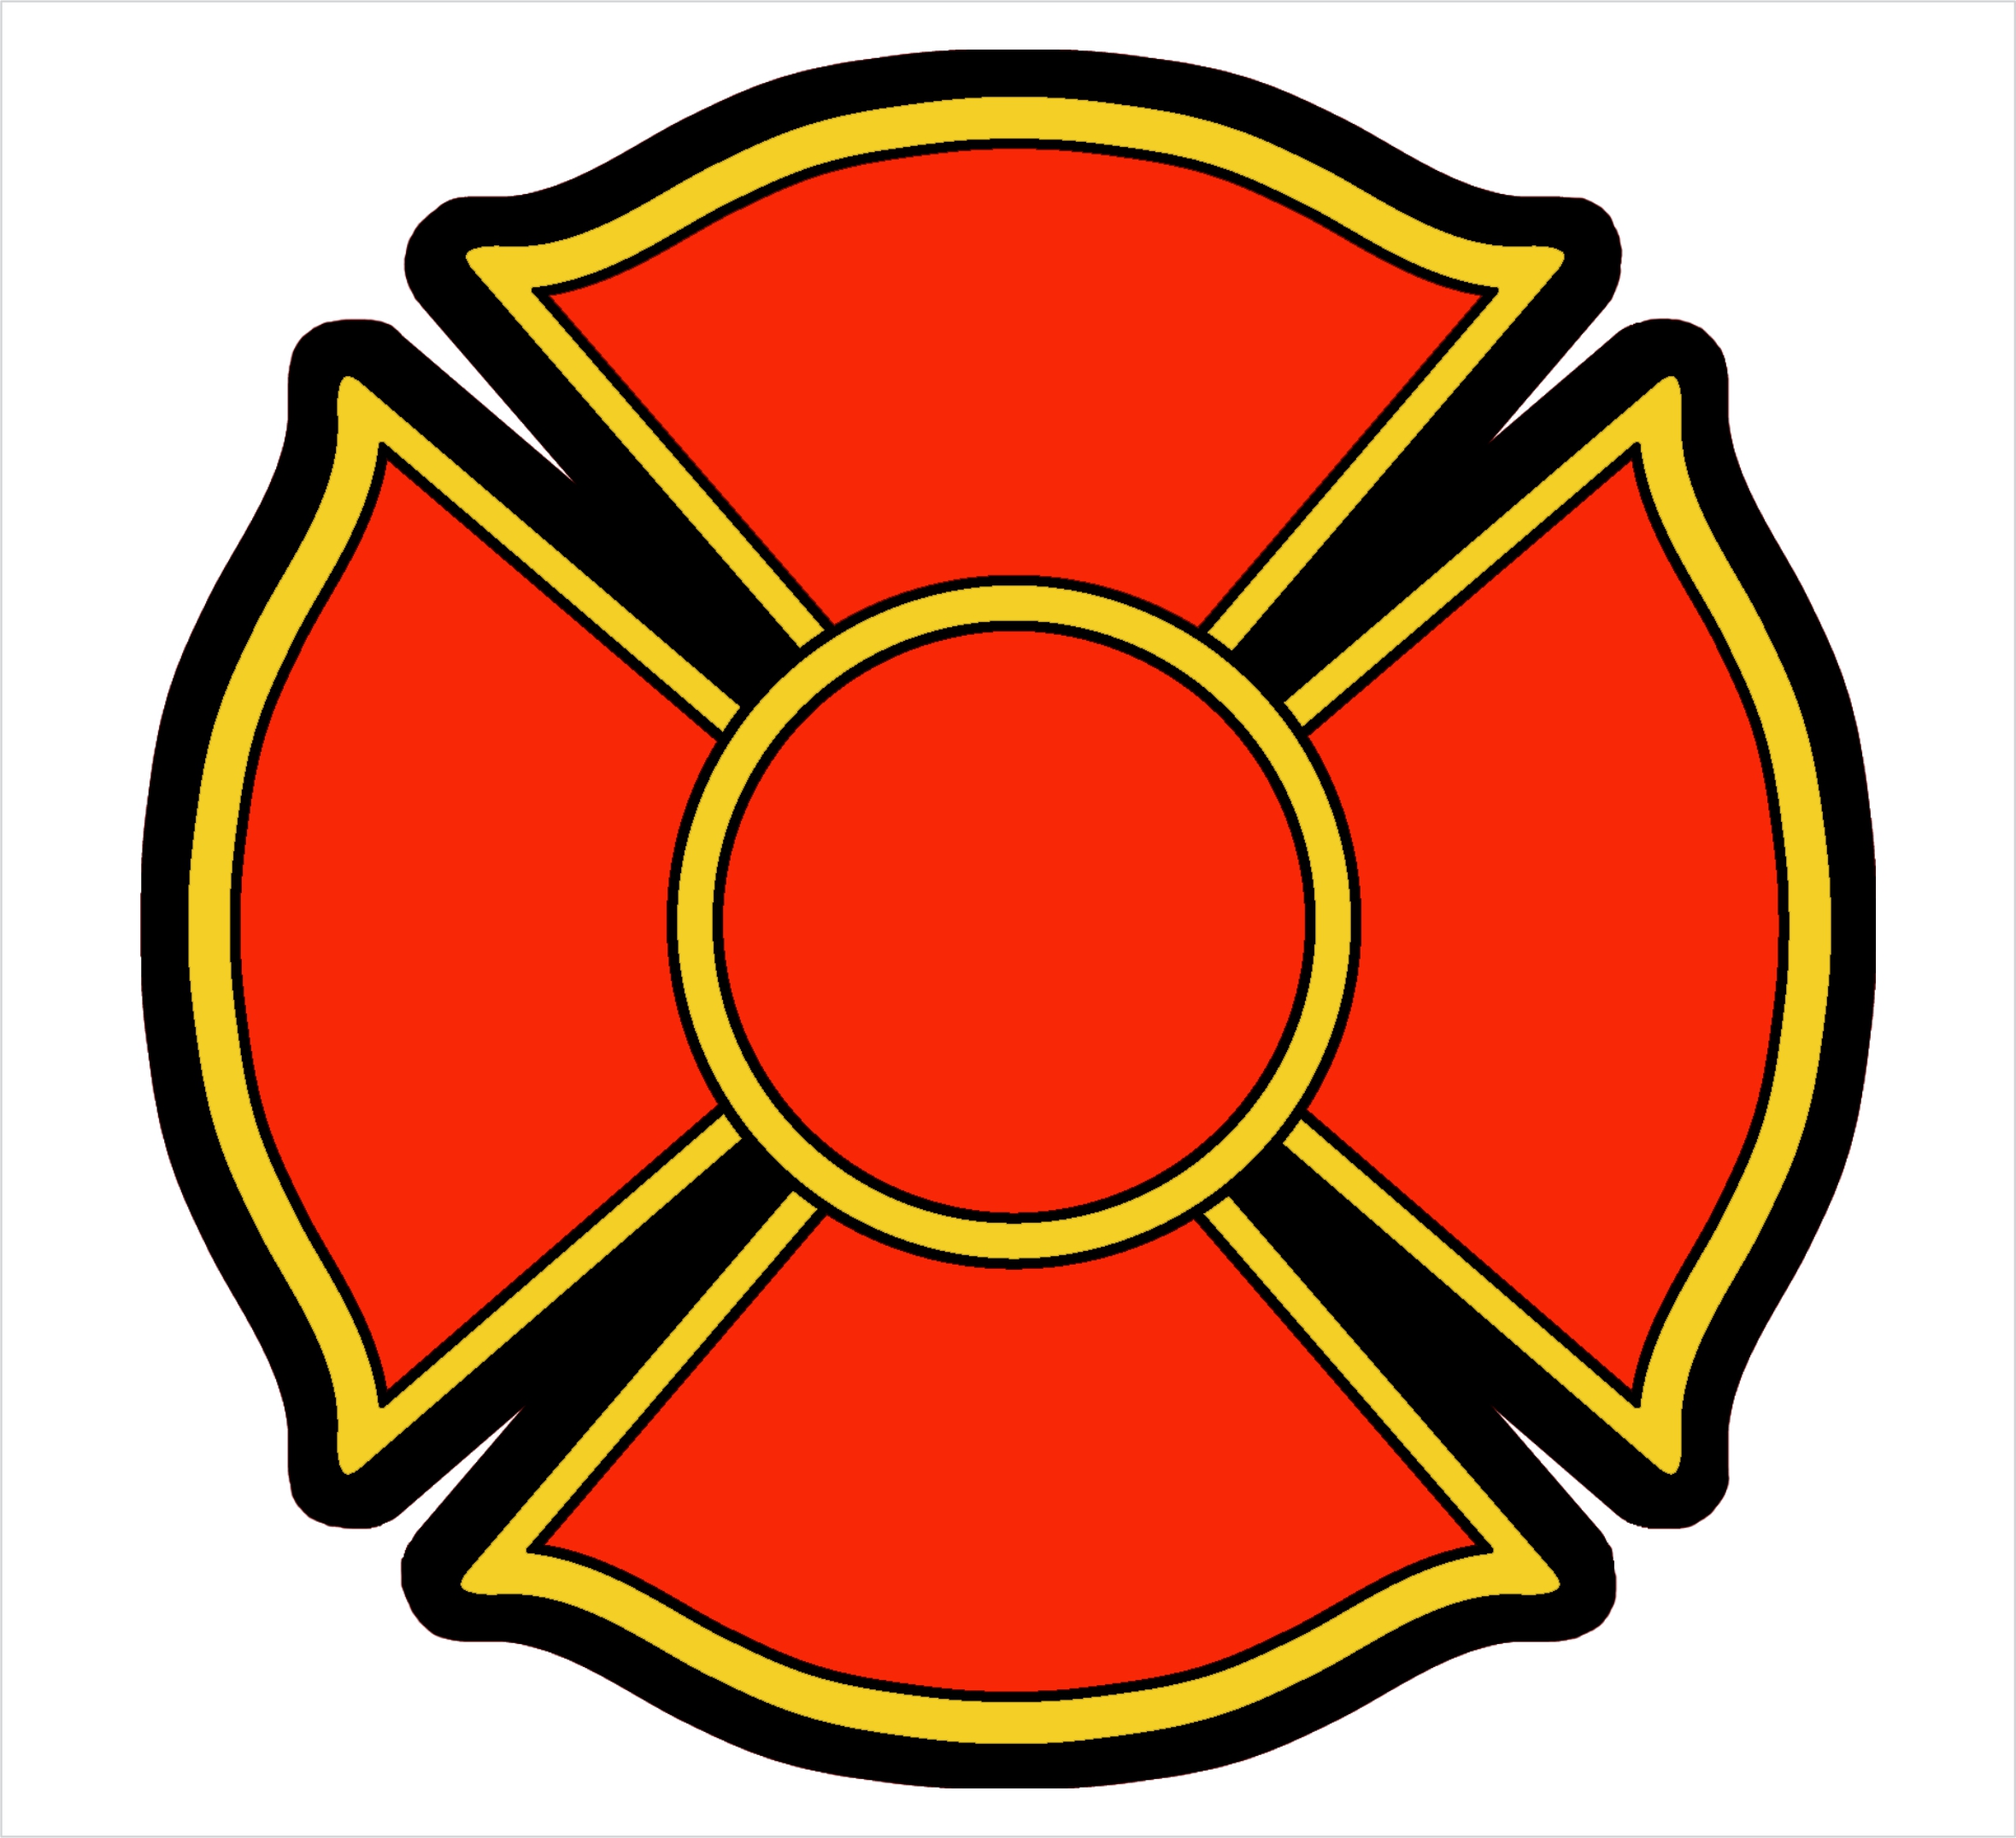 Fire Department Maltese Cross Clipart Best - Bank2home.com